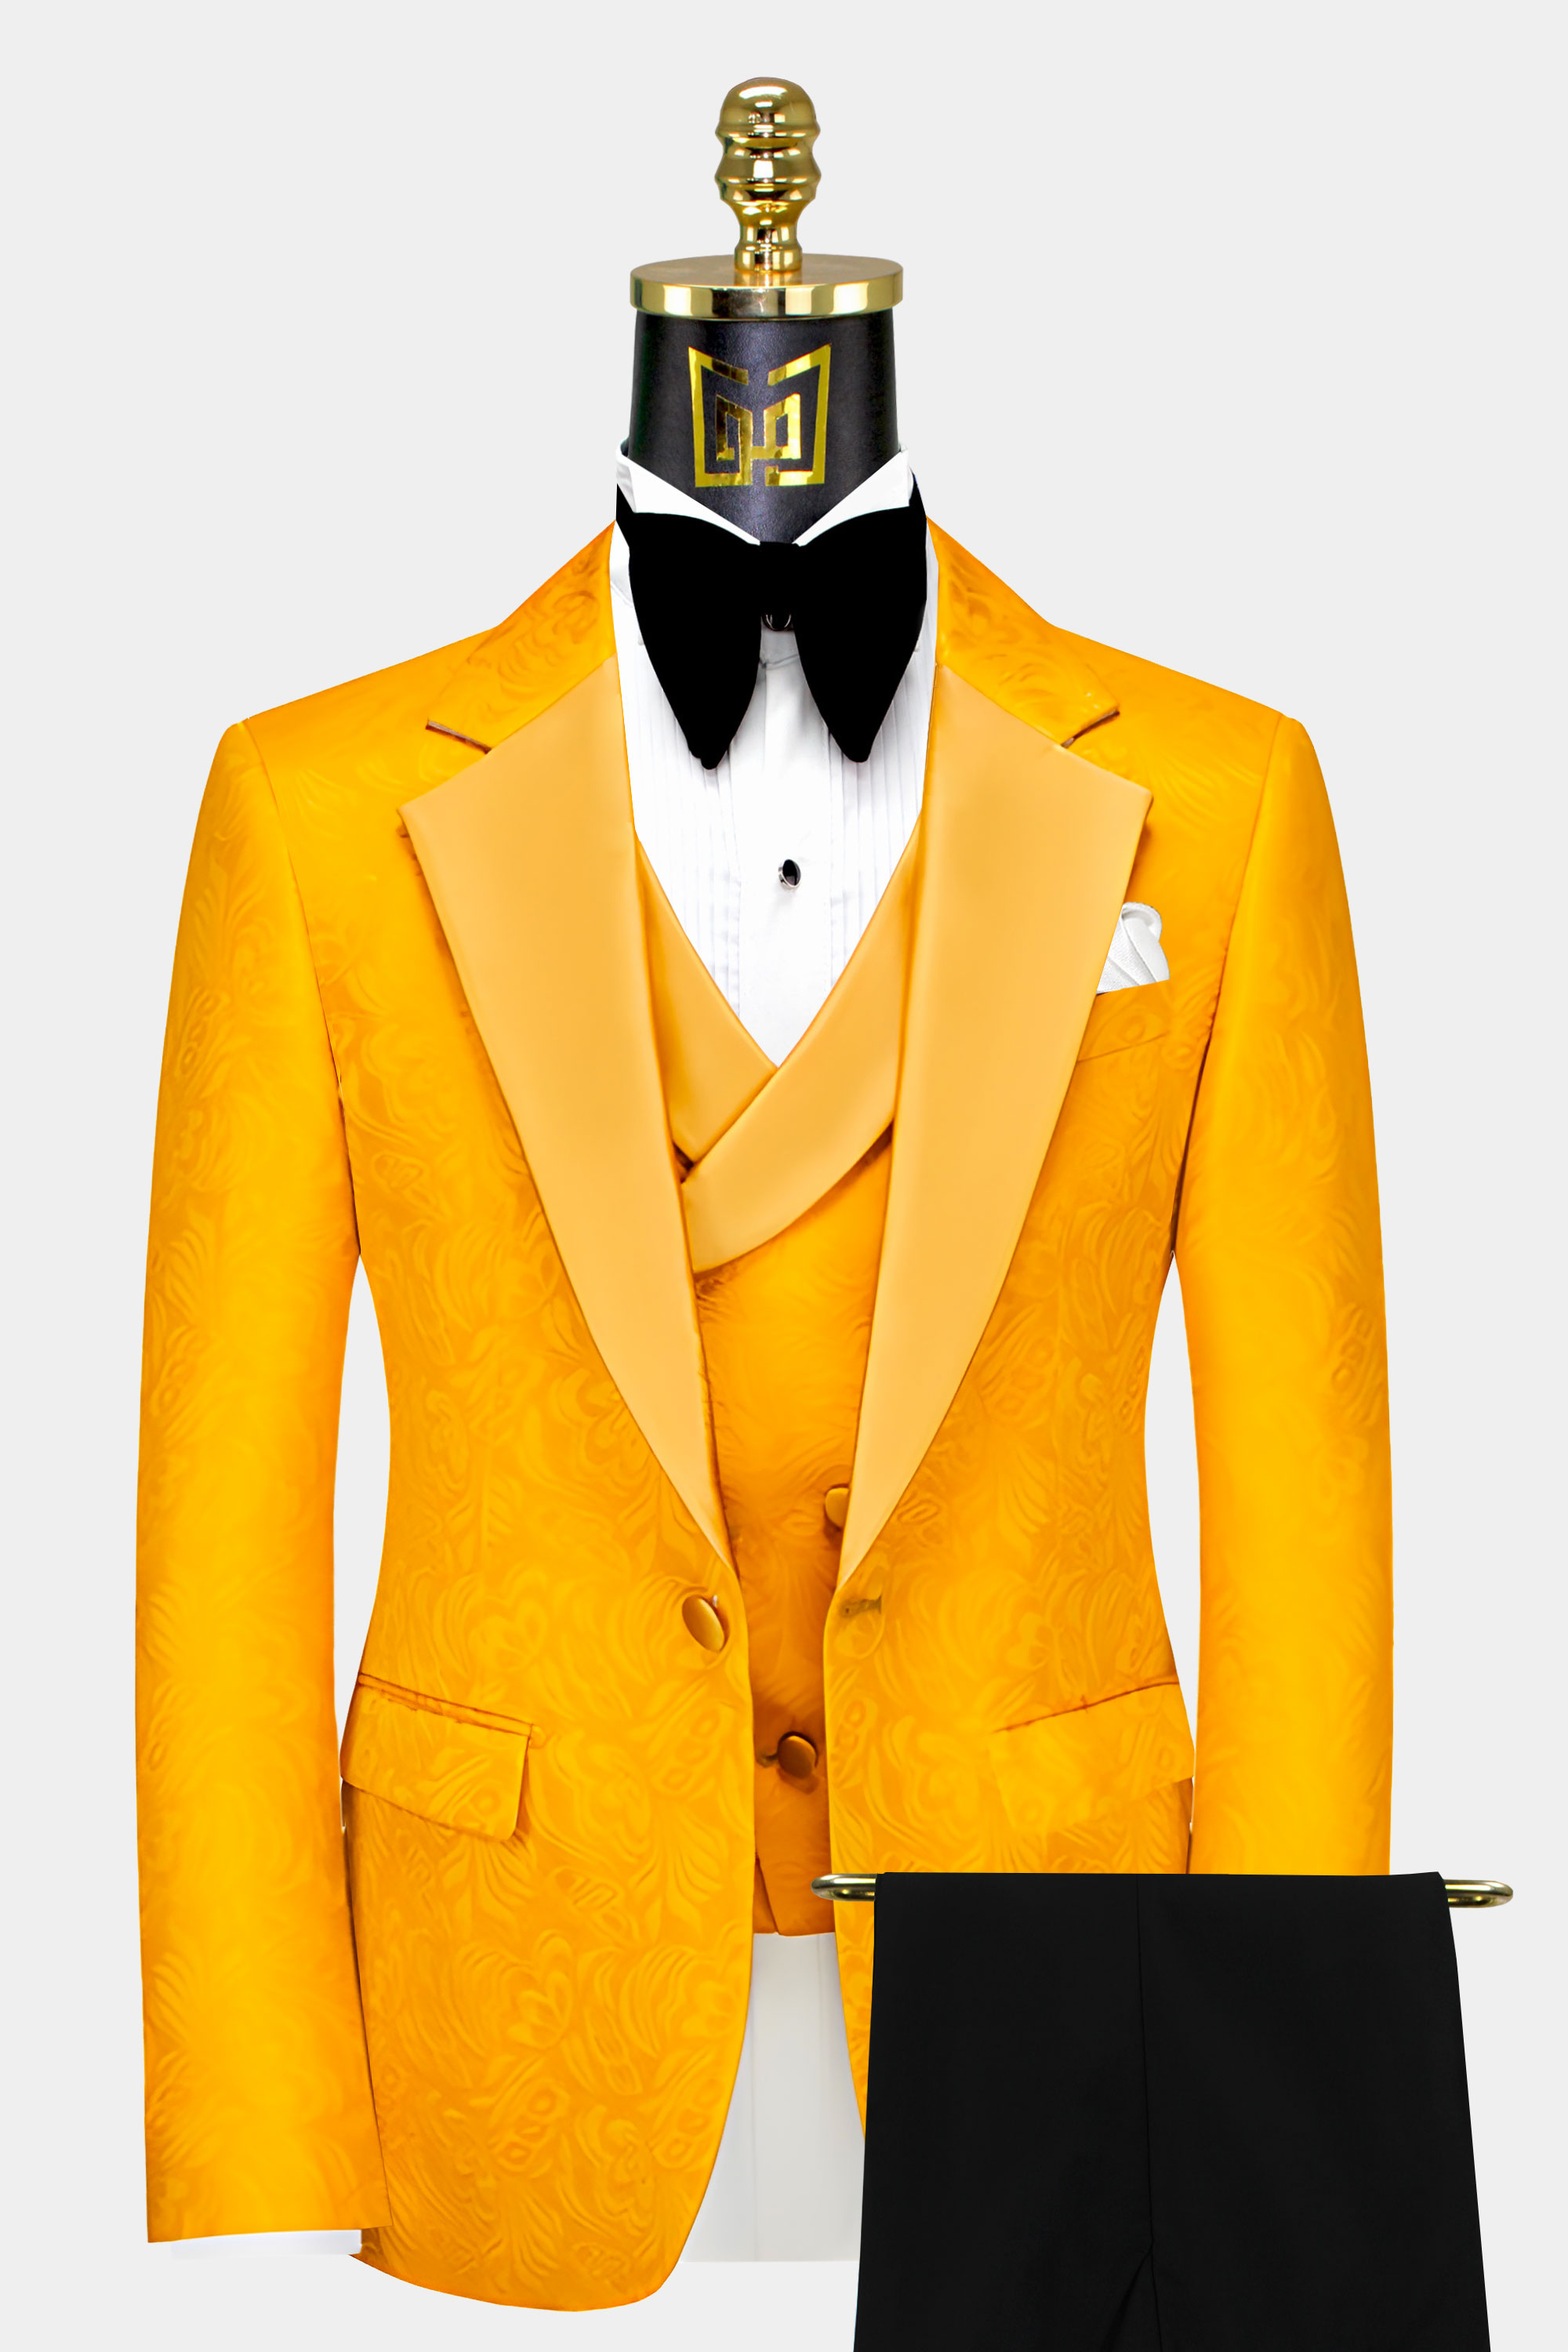 Black-Orange-Gold-Floral-Tuxedo-Groom-Wedding-Suit-For-Men-from-Gentlemansguru.com